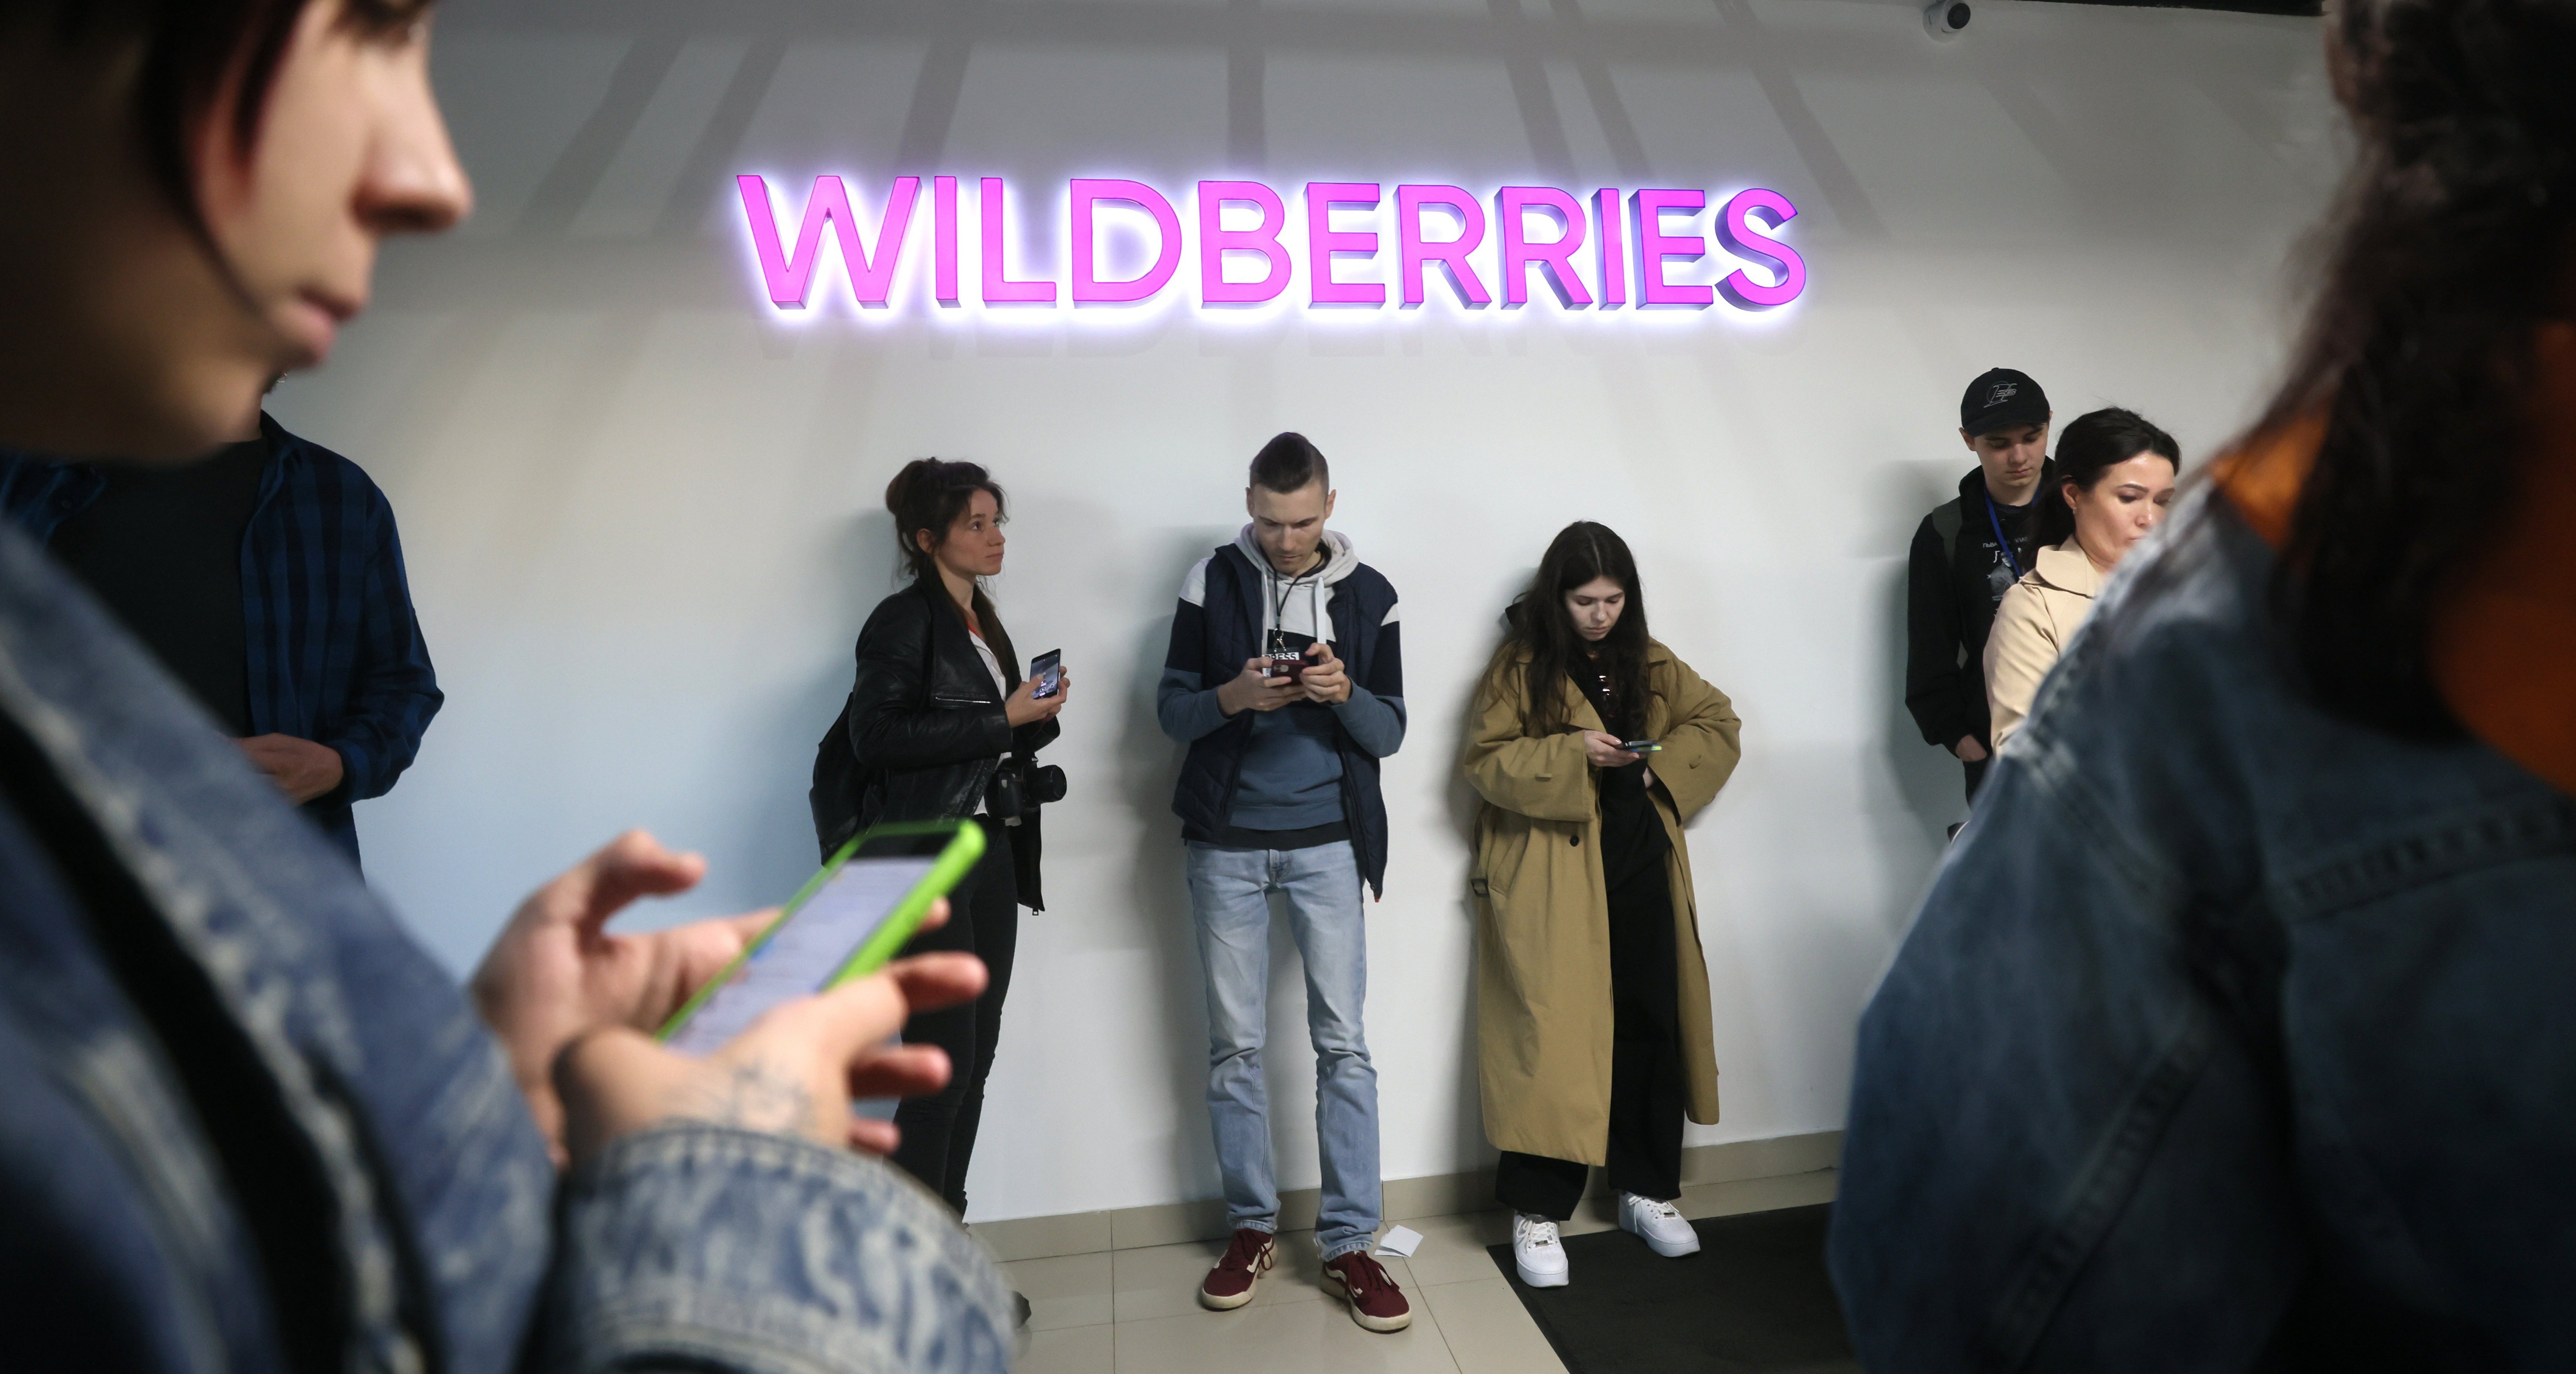 Списание wildberries. Вайлдберриз рекламное лицо 2023. Вайлдберриз новости. IP реклама Wildberries. 650 Миллионов вайлдберрис.